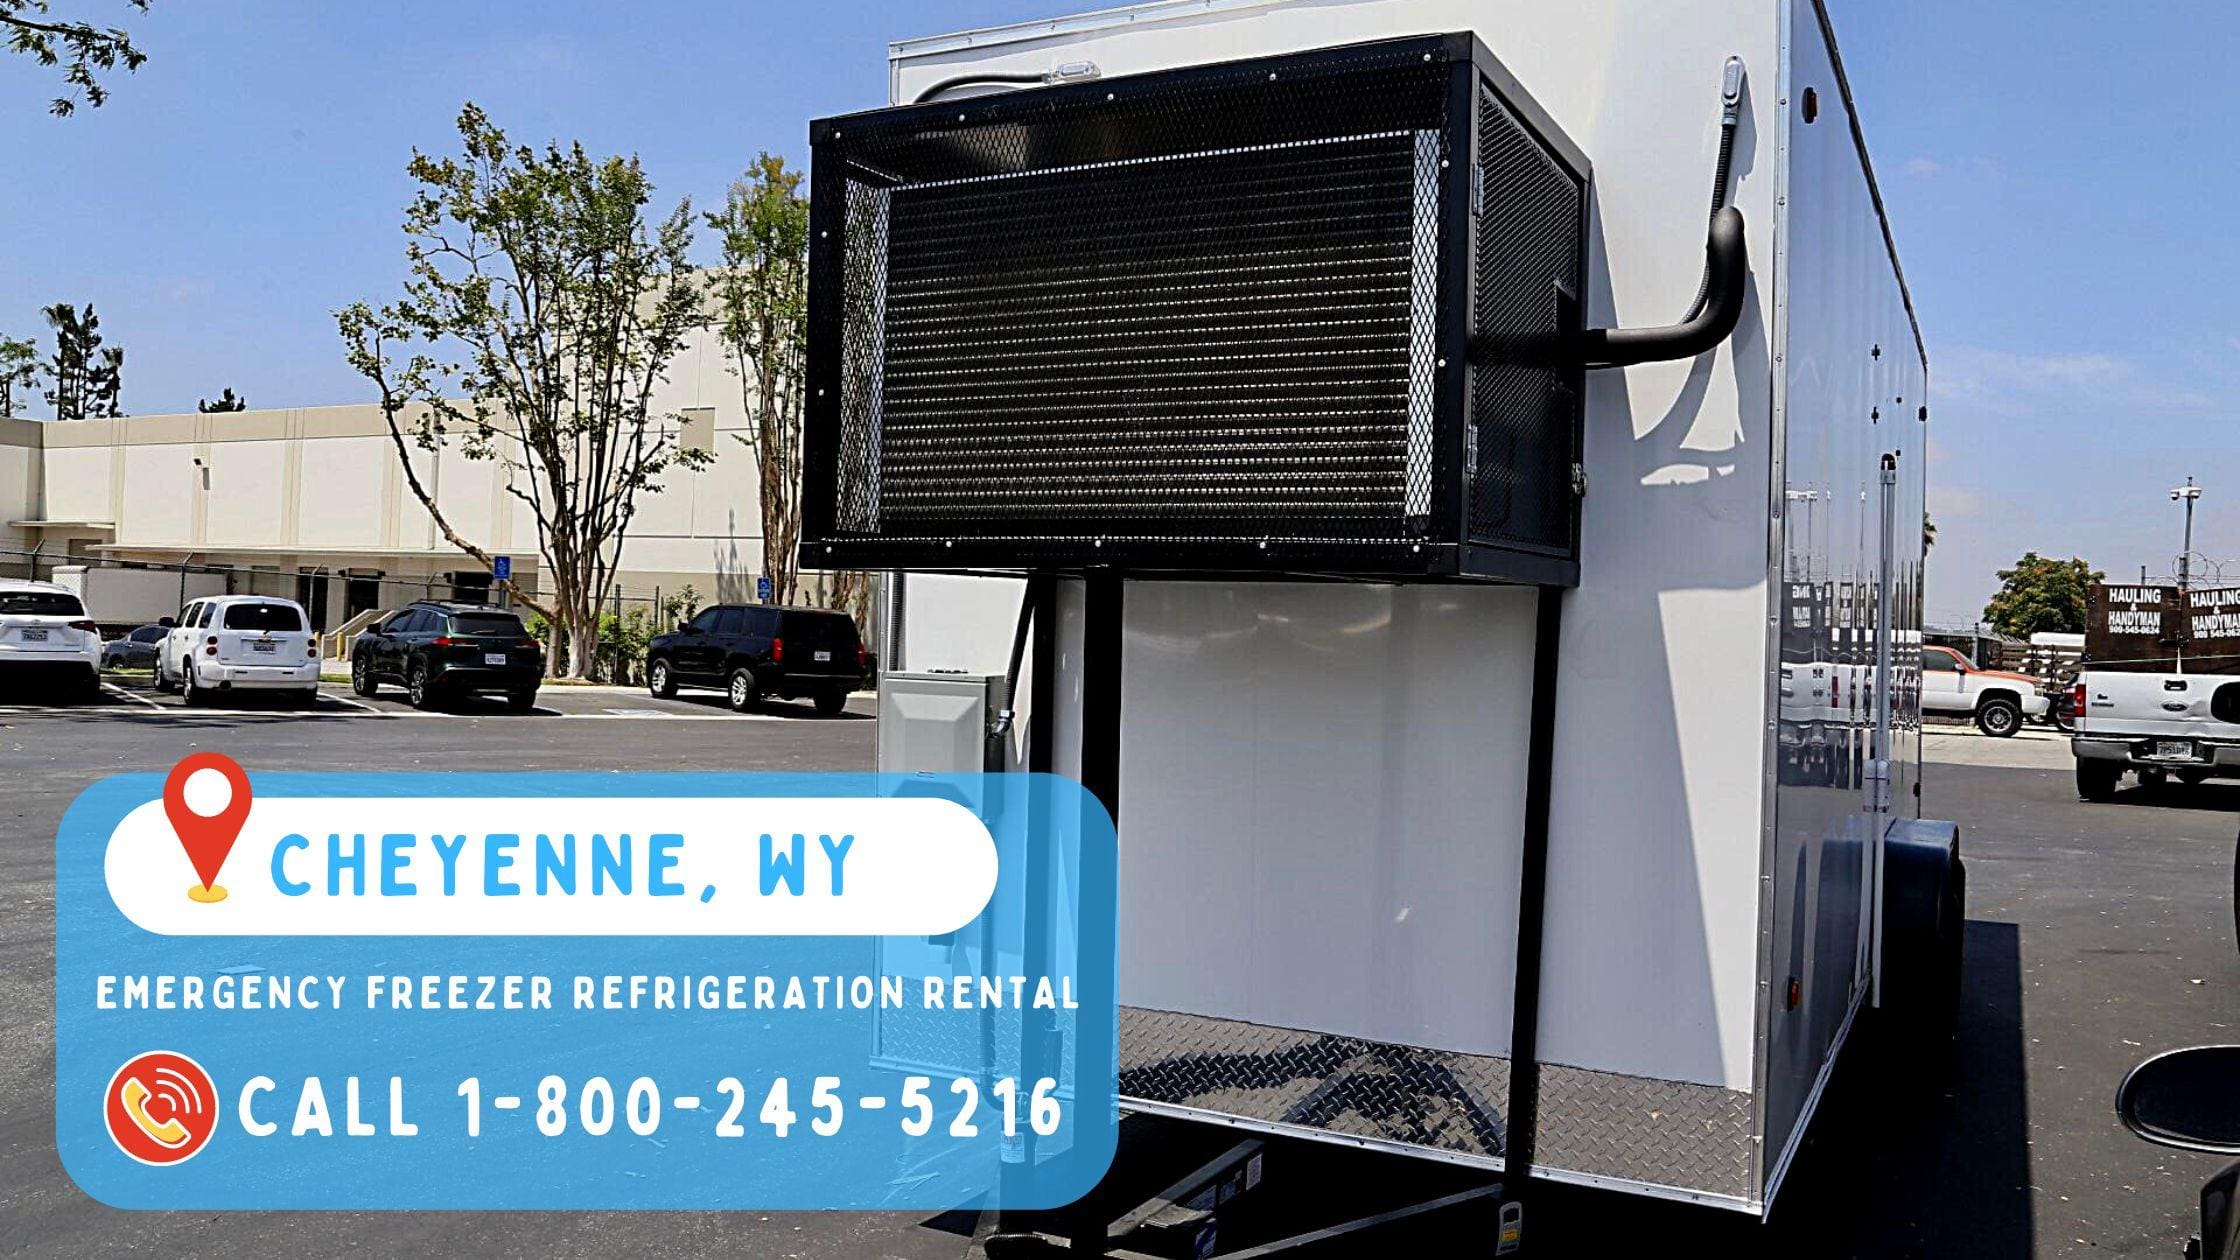 Emergency Freezer Refrigeration Rental in Cheyenne, WY